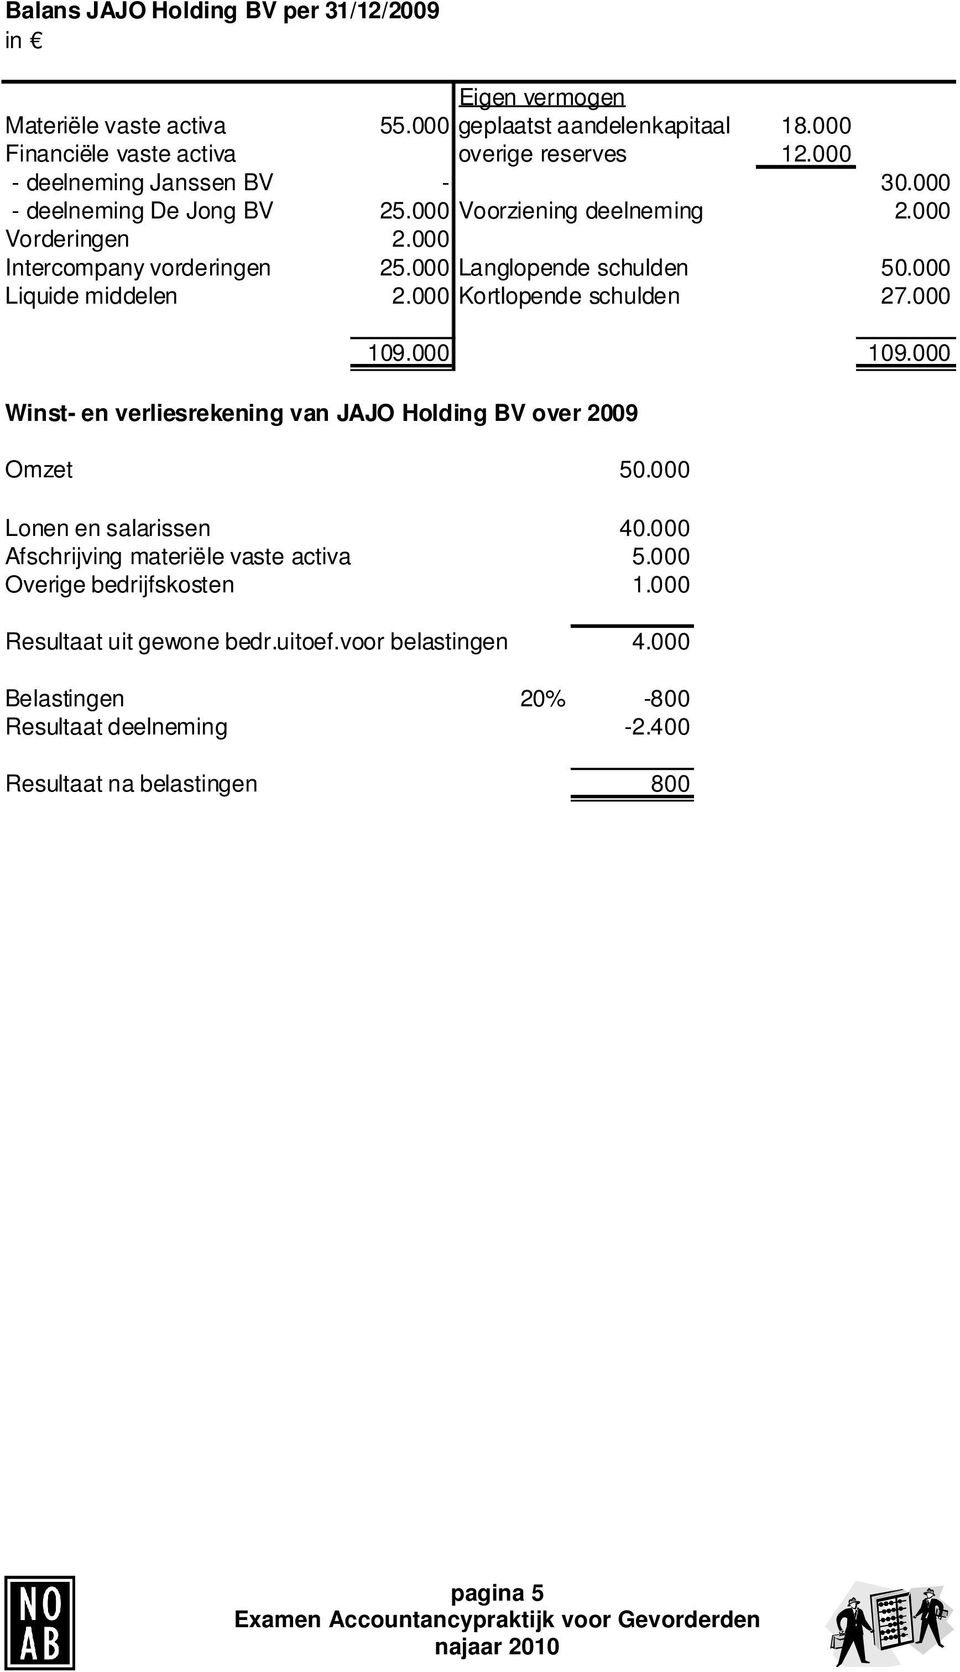 000 Liquide middelen 2.000 Kortlopende schulden 27.000 Winst- en verliesrekening van JAJO Holding BV over 2009 109.000 109.000 Omzet 50.000 Lonen en salarissen 40.